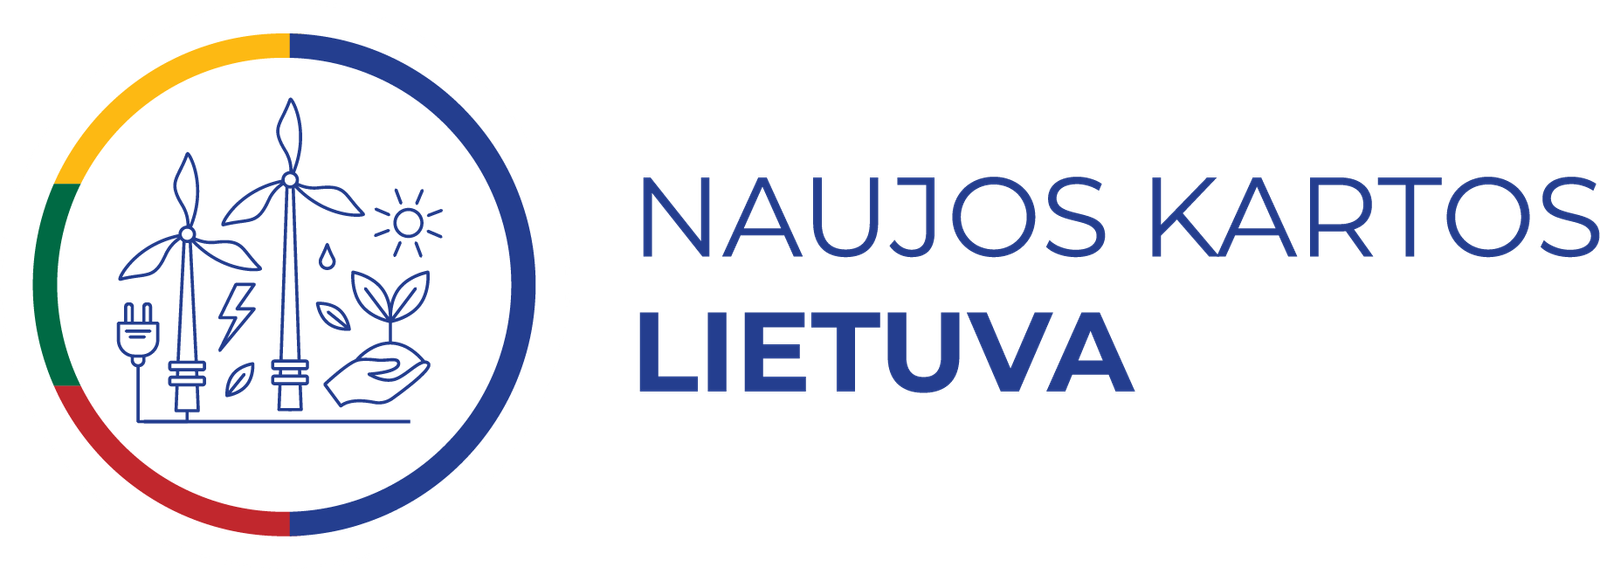 Naujos kartos Lietuva